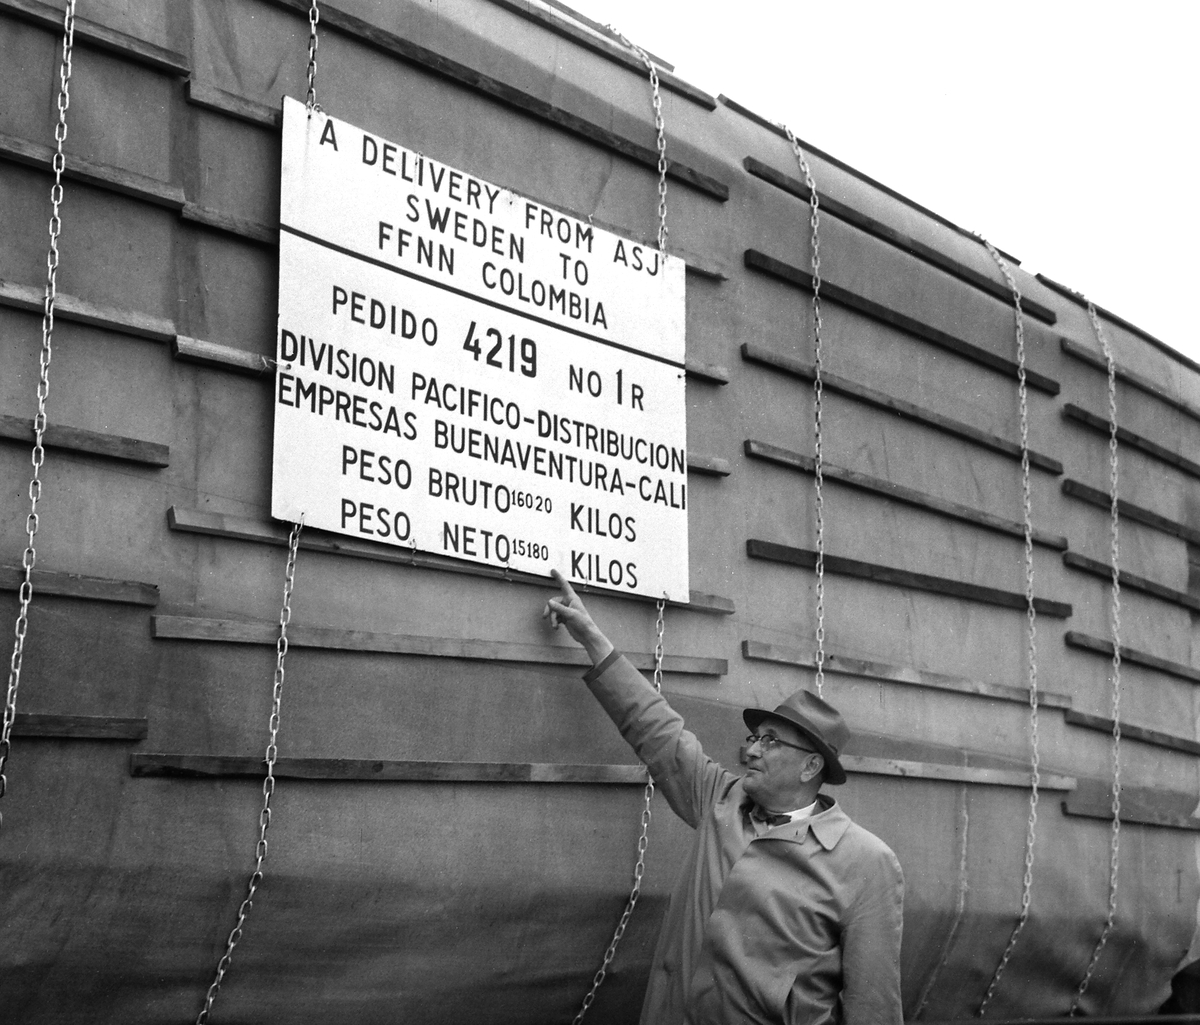 Inpackat tåg som tillverkats på ASJ för transport till Colombia, 1958.